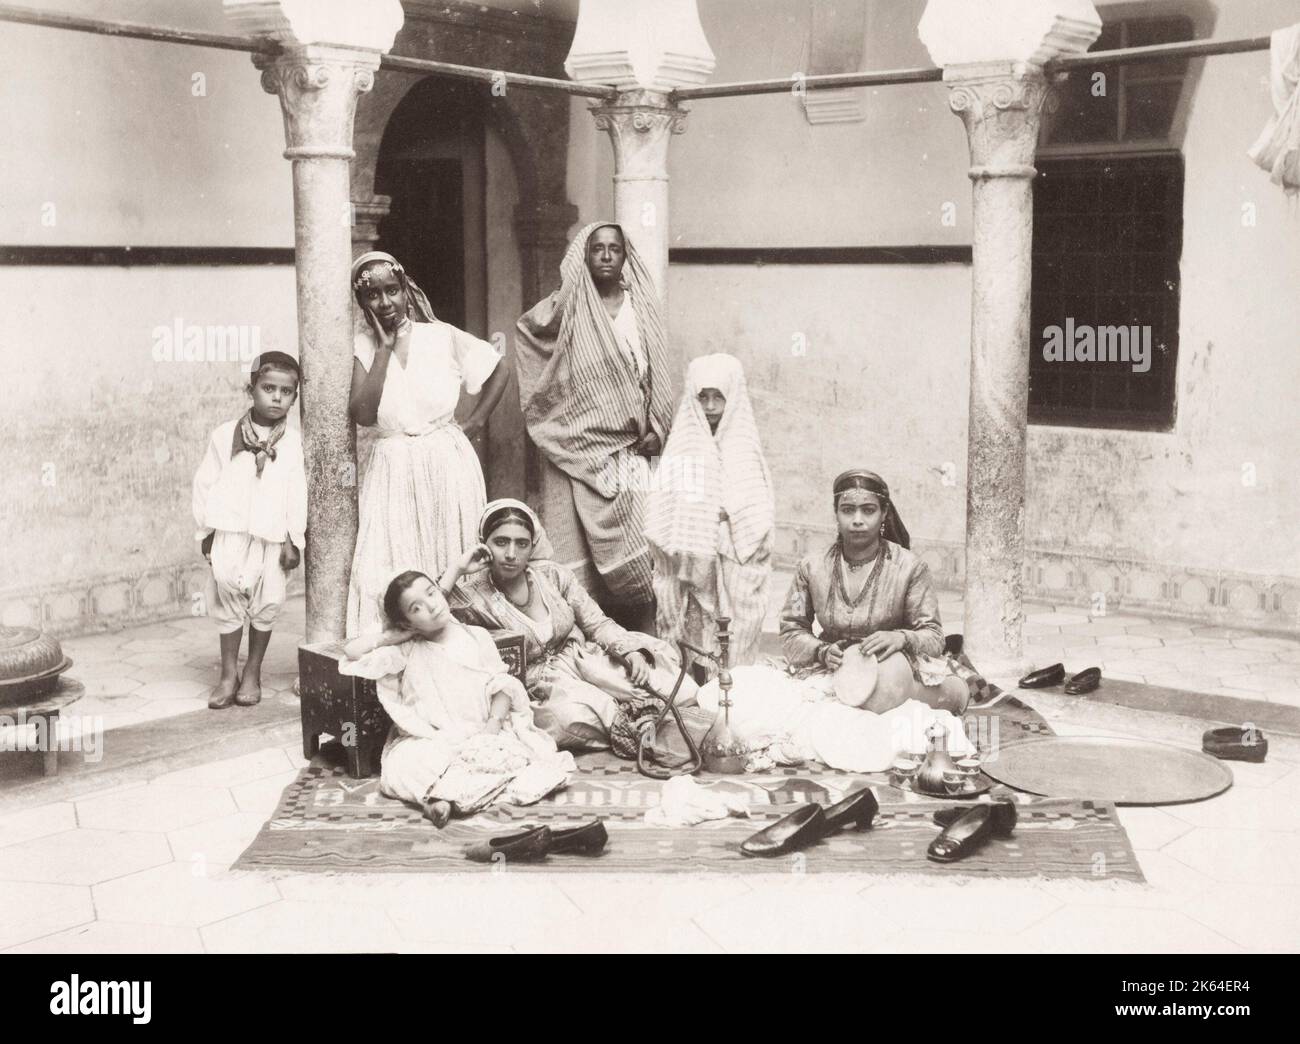 Photographie vintage du XIXe siècle : groupe de femmes nord-africaines, Algérie, vers 1890 Banque D'Images